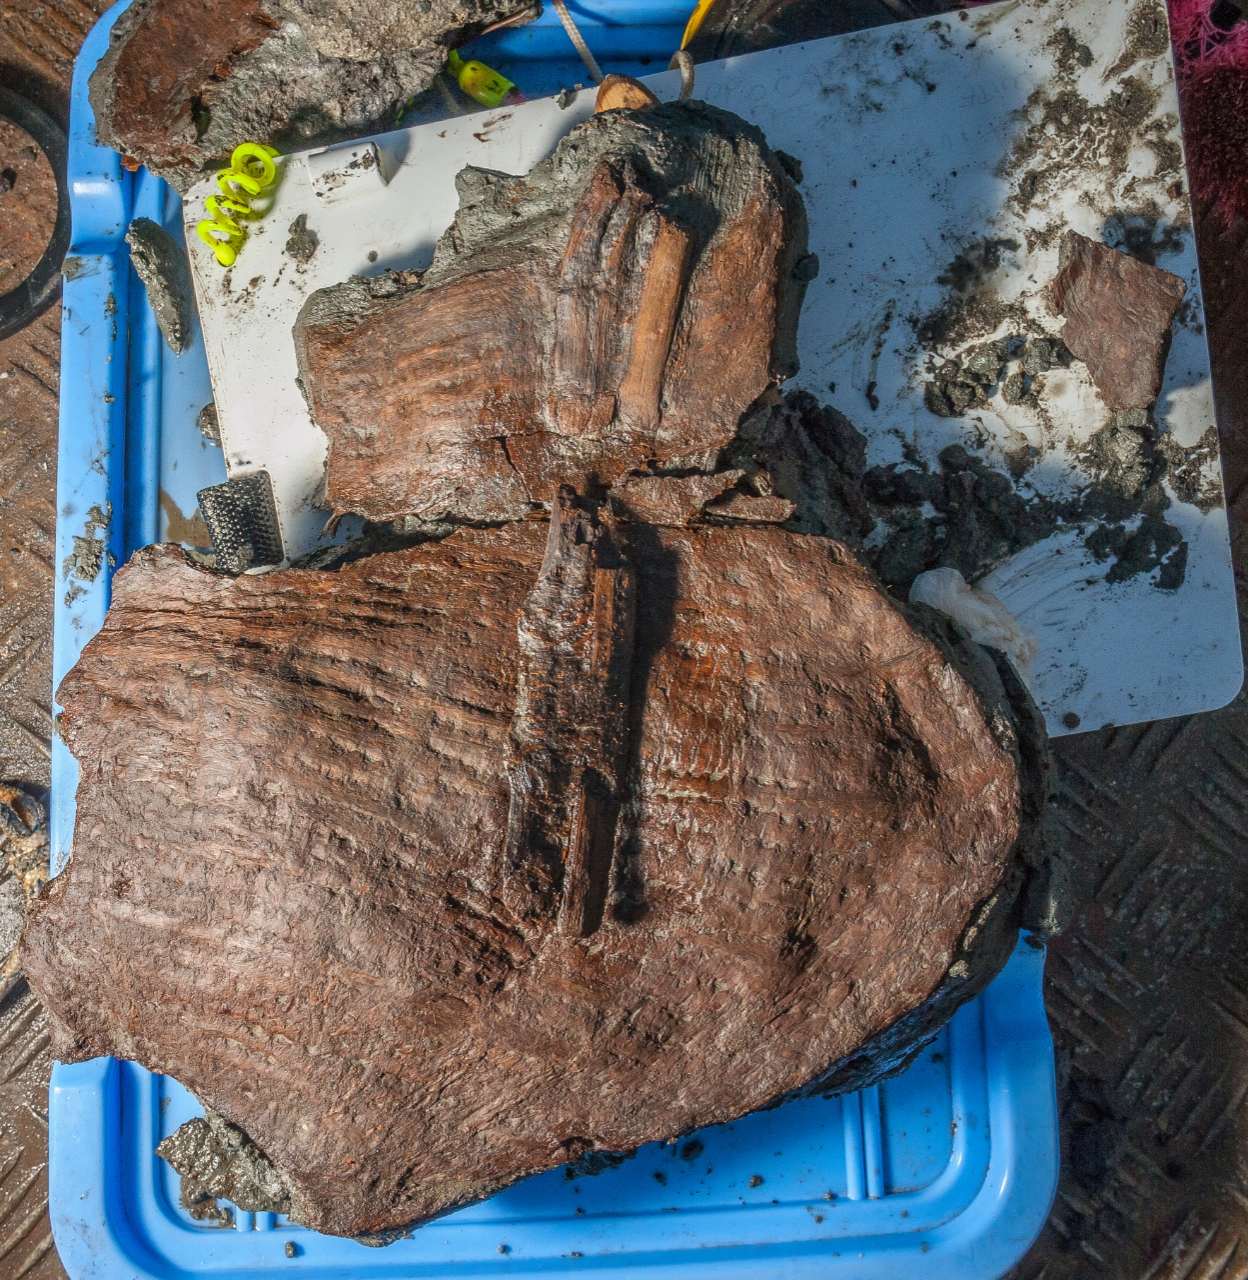 Des paniers vieux de 2,400 1 ans encore remplis de fruits trouvés dans la ville égyptienne submergée XNUMX